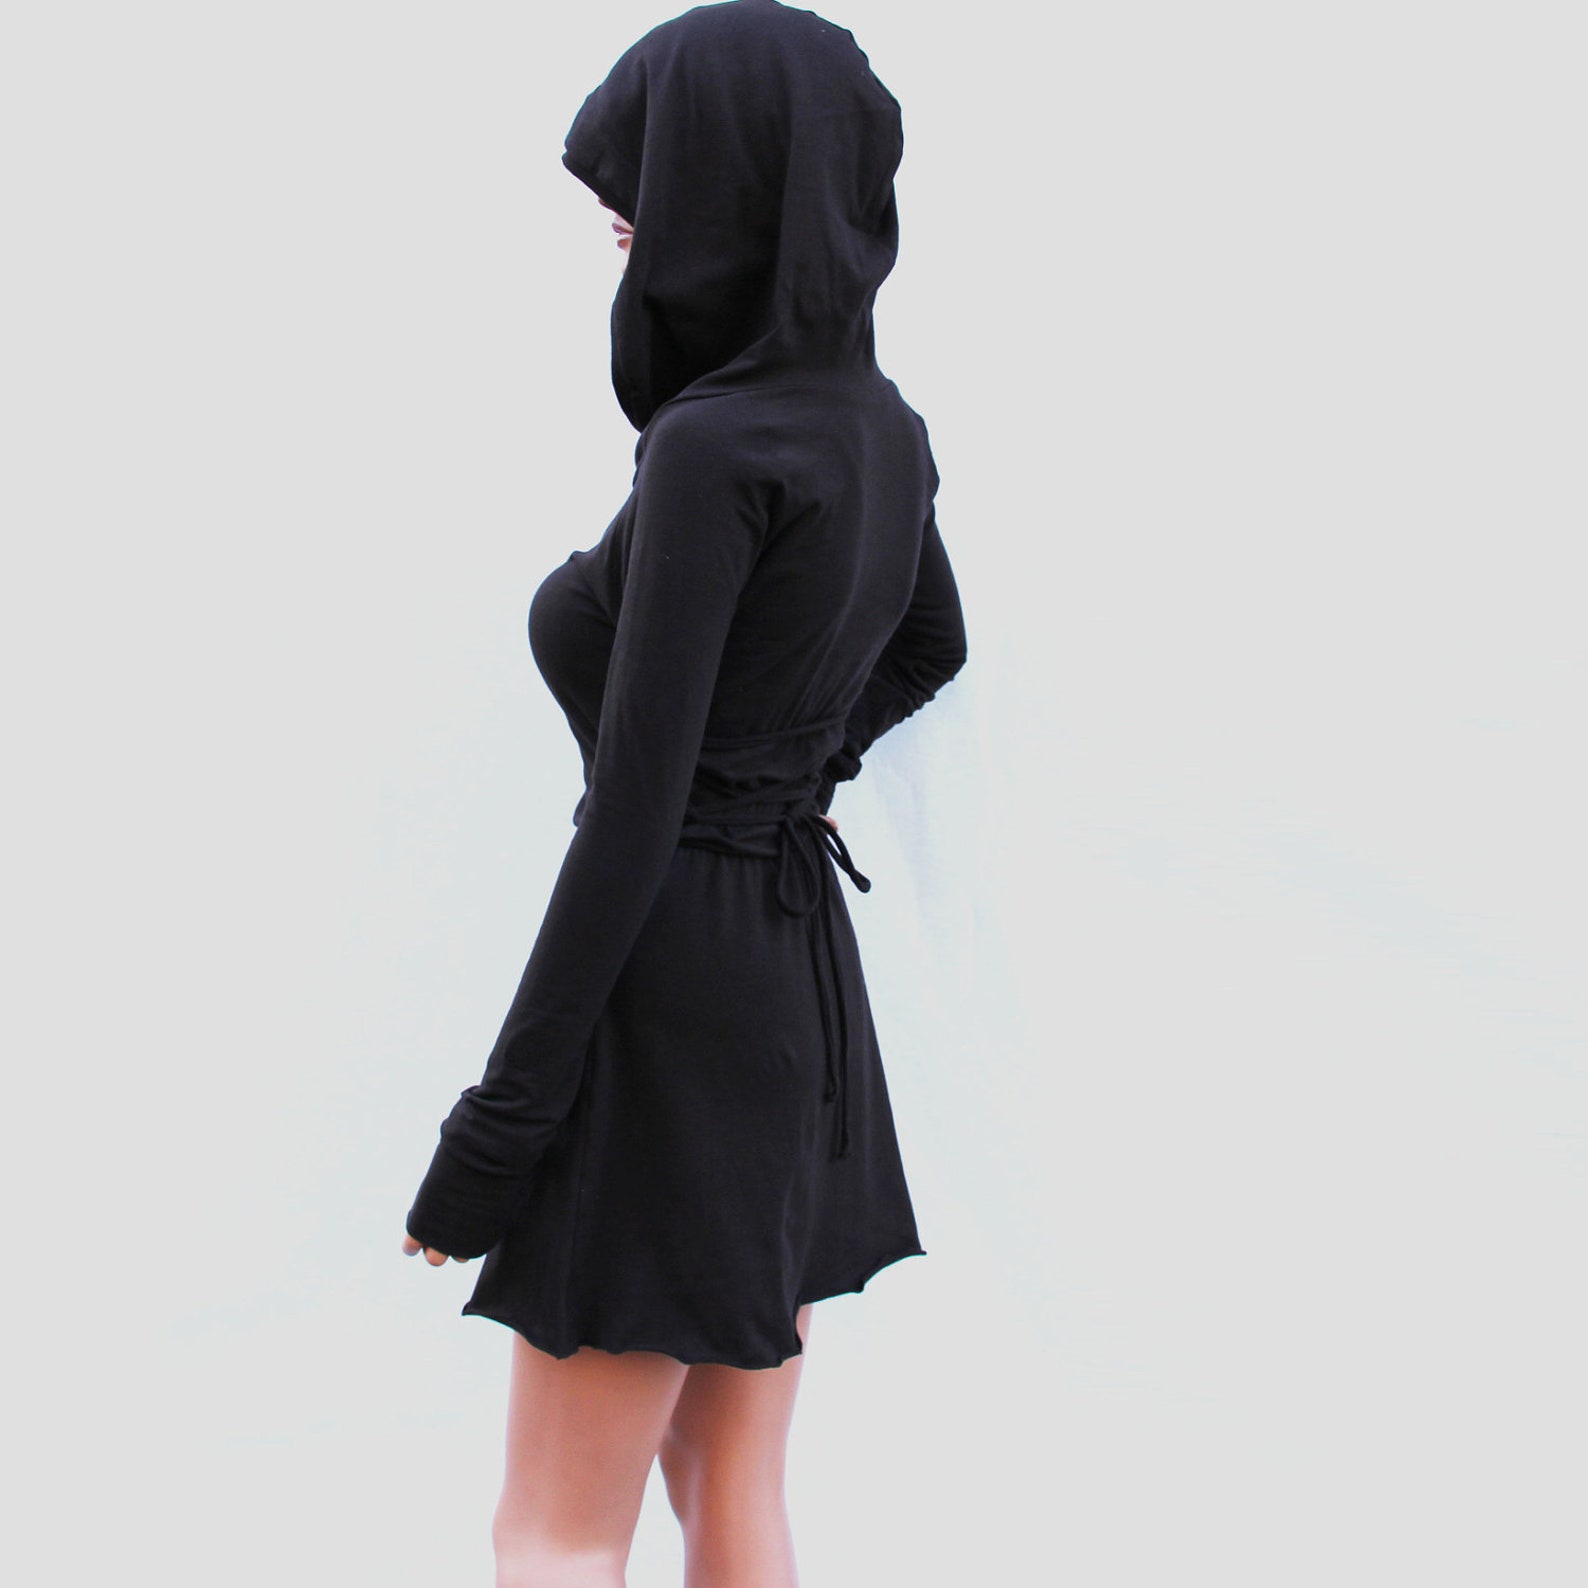 Платье с капюшоном. Платье черное с капюшоном. Платье с капюшоном длинное. Трикотажное платье с капюшоном.